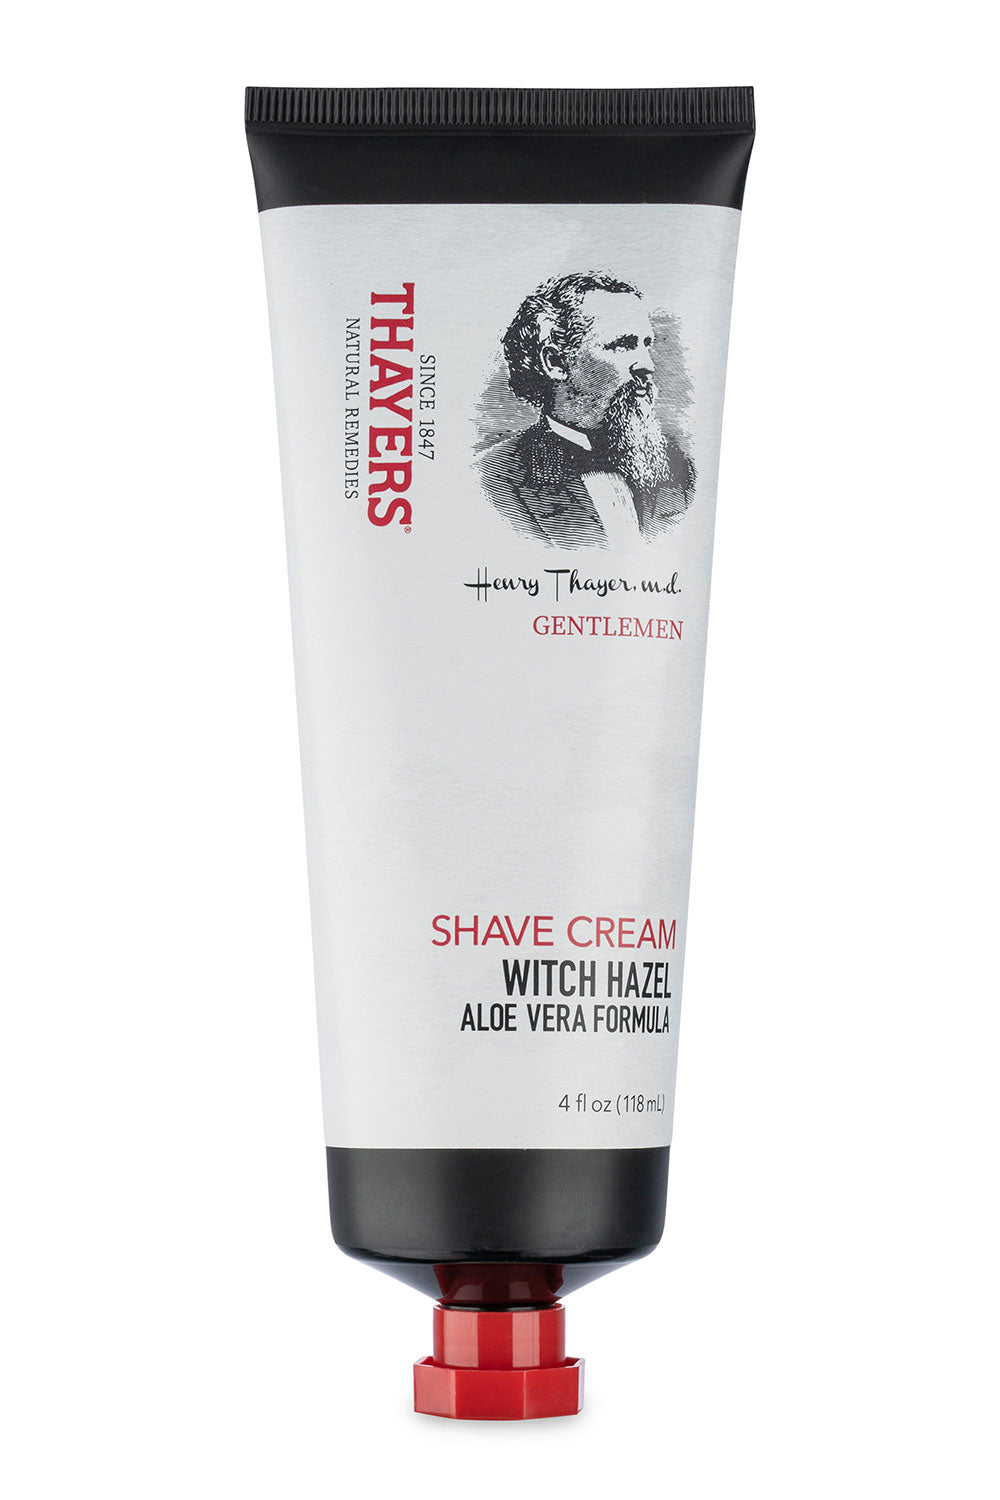 Thayers Witch Hazel- Gentlemen's Shave Cream